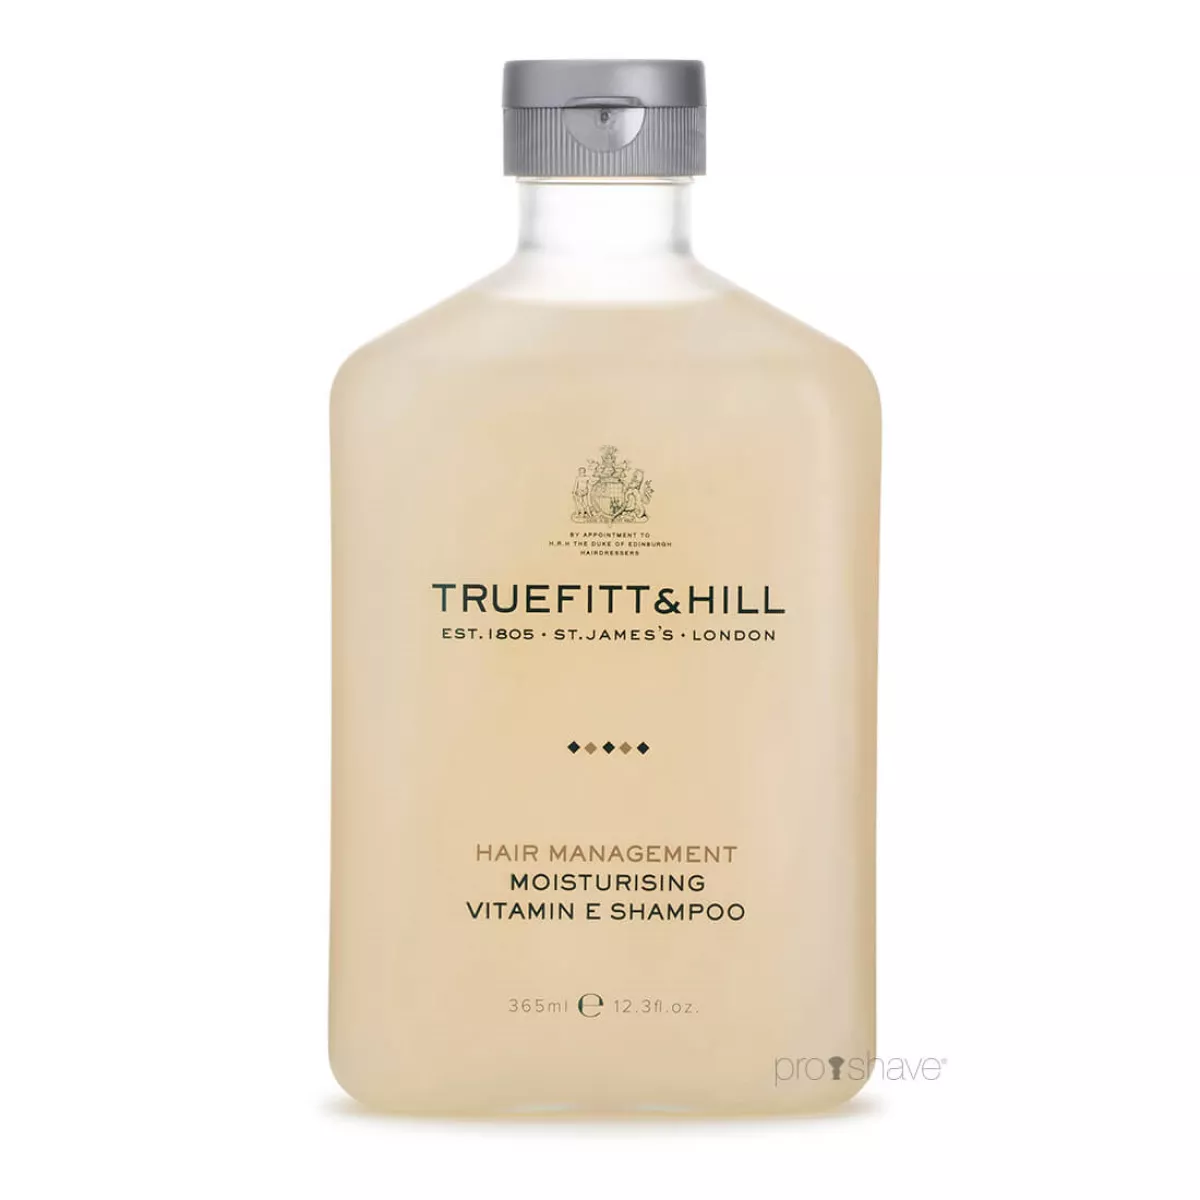 #1 - Truefitt & Hill Moisturising Vitamin E Shampoo, 365 ml.